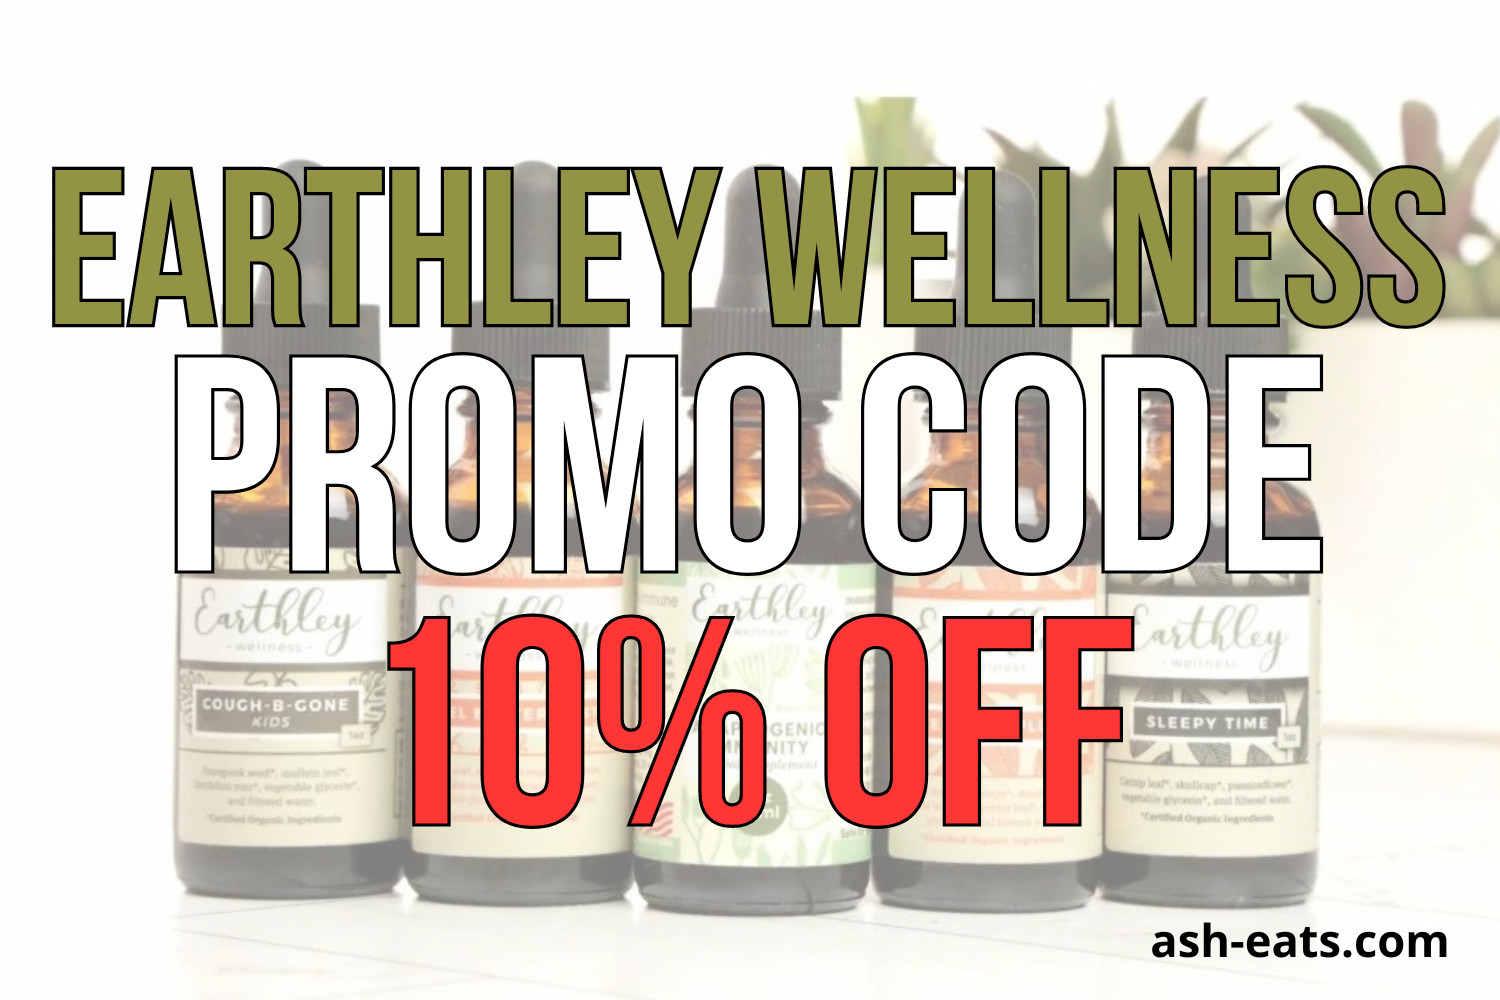 earthley wellness promo code